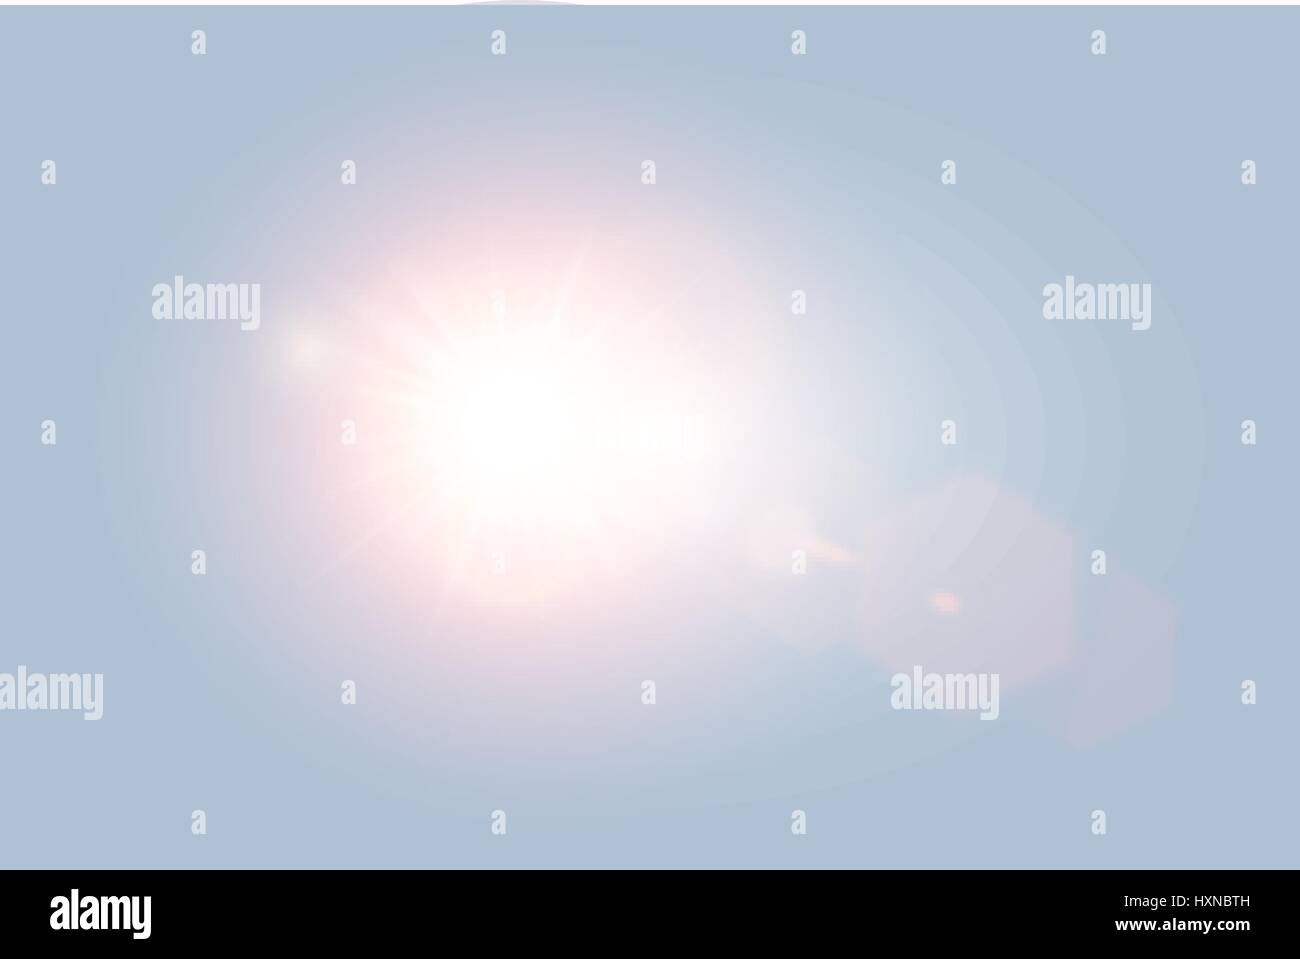 Vektor-transparenten hellen Tag Sonnenlicht lens Flare mit Sechseck-Elementen auf hellblauem Hintergrund. Sunrice oder Sonnenuntergang, Sterne platzen. Stock Vektor